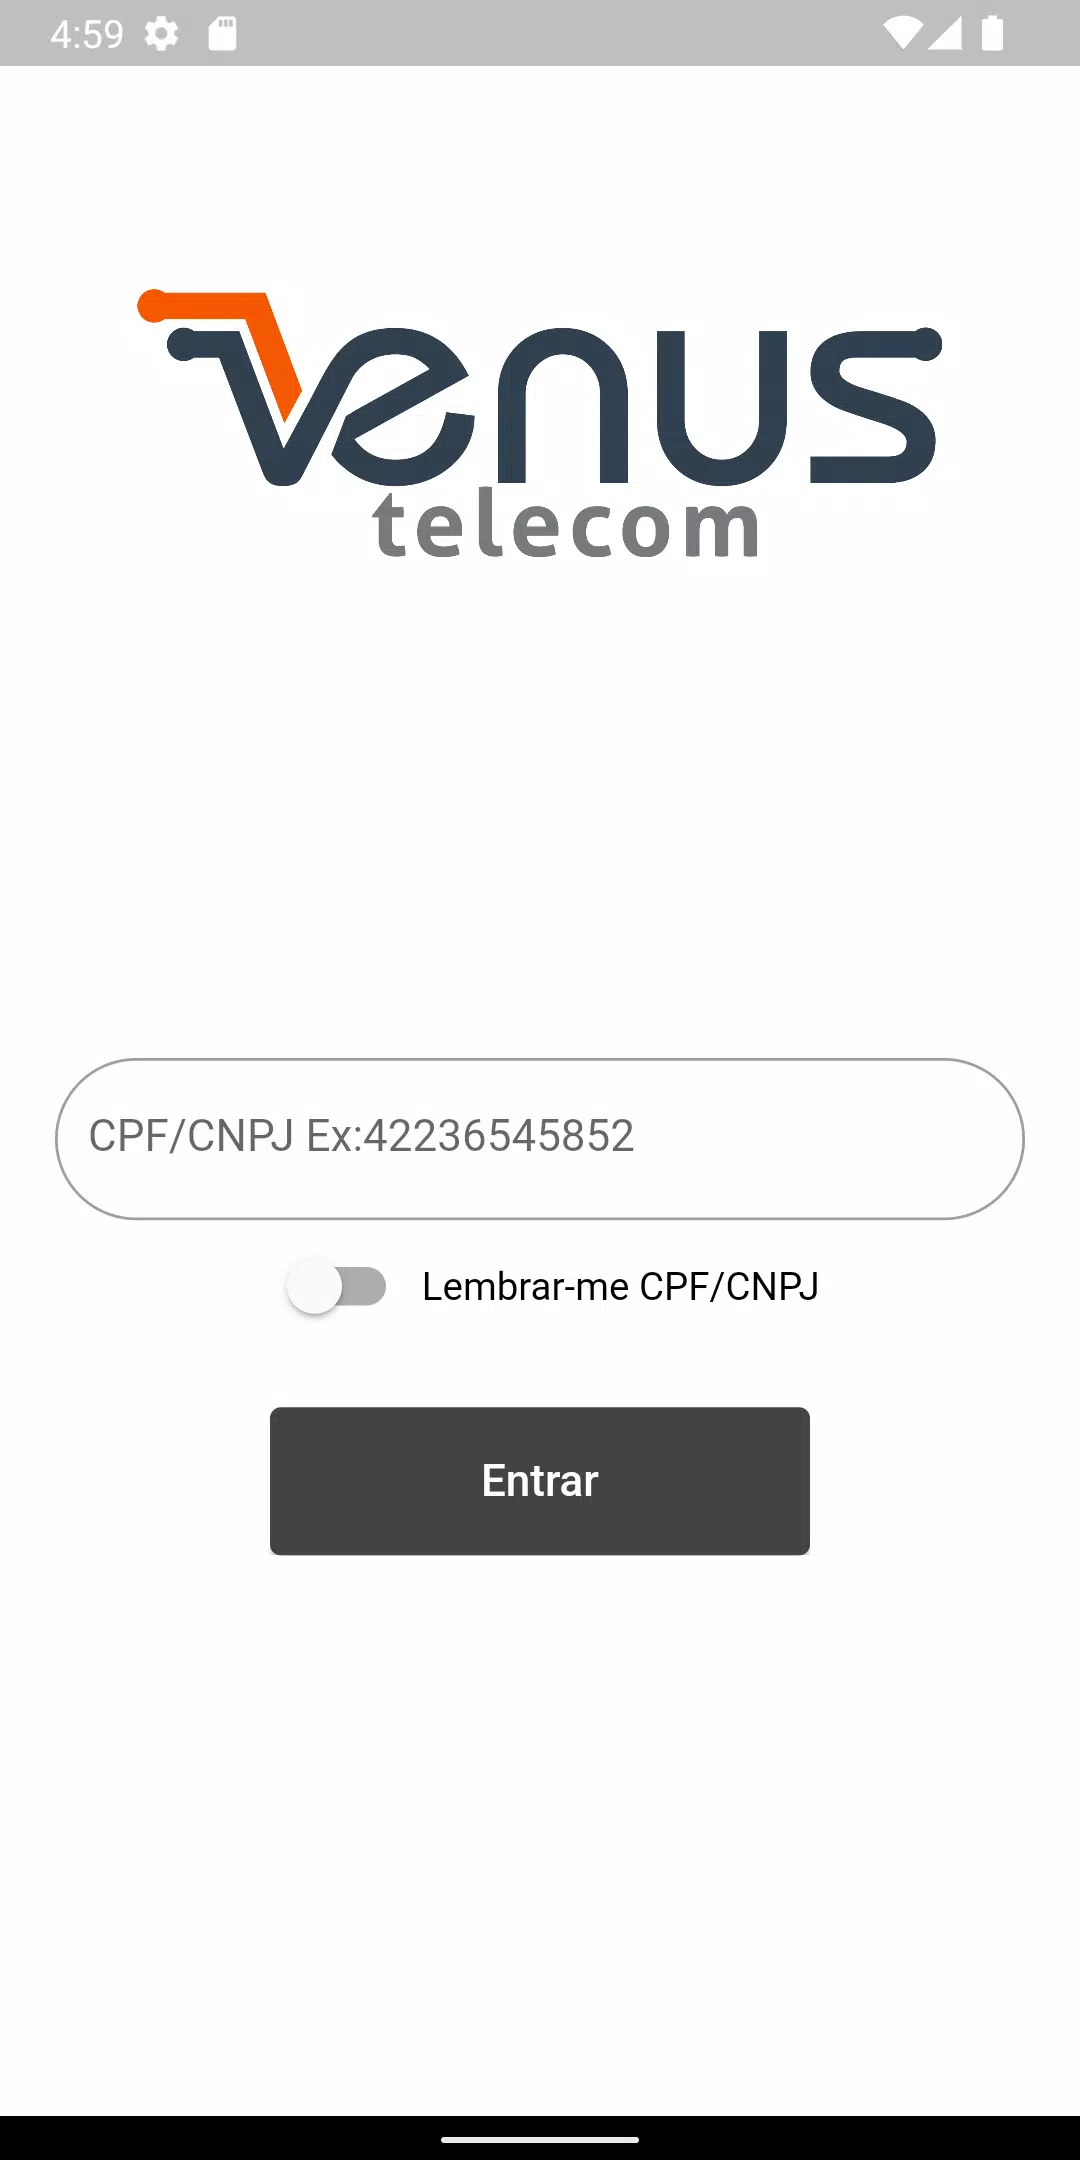 Venus Telecom / Facilnet APK for Android Download